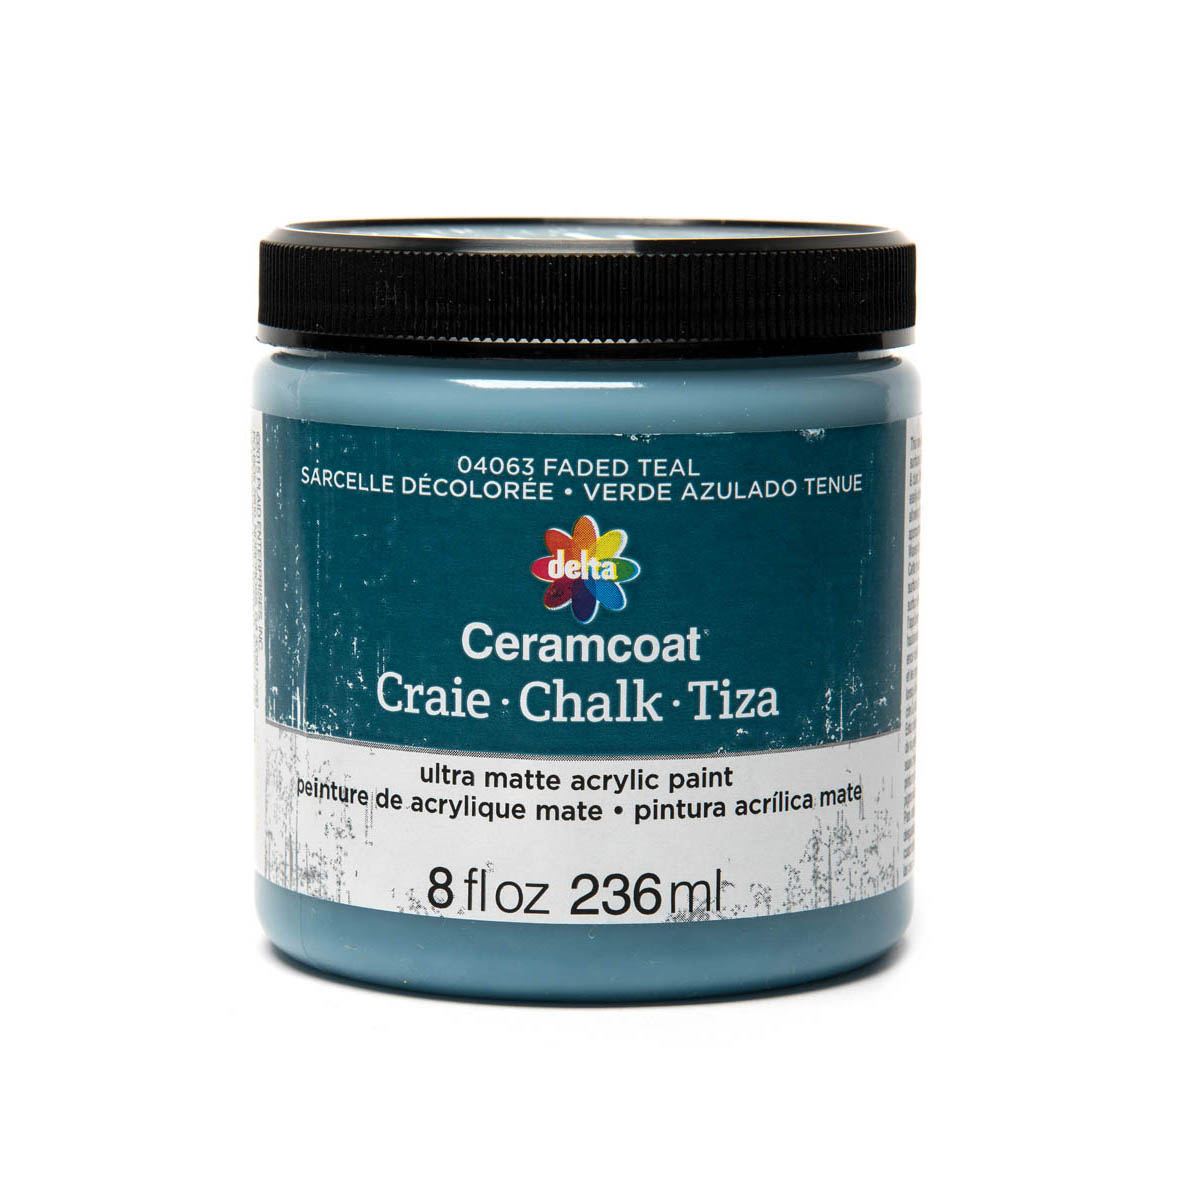 Delta Ceramcoat ® Chalk - Faded Teal, 8 oz. - 04063